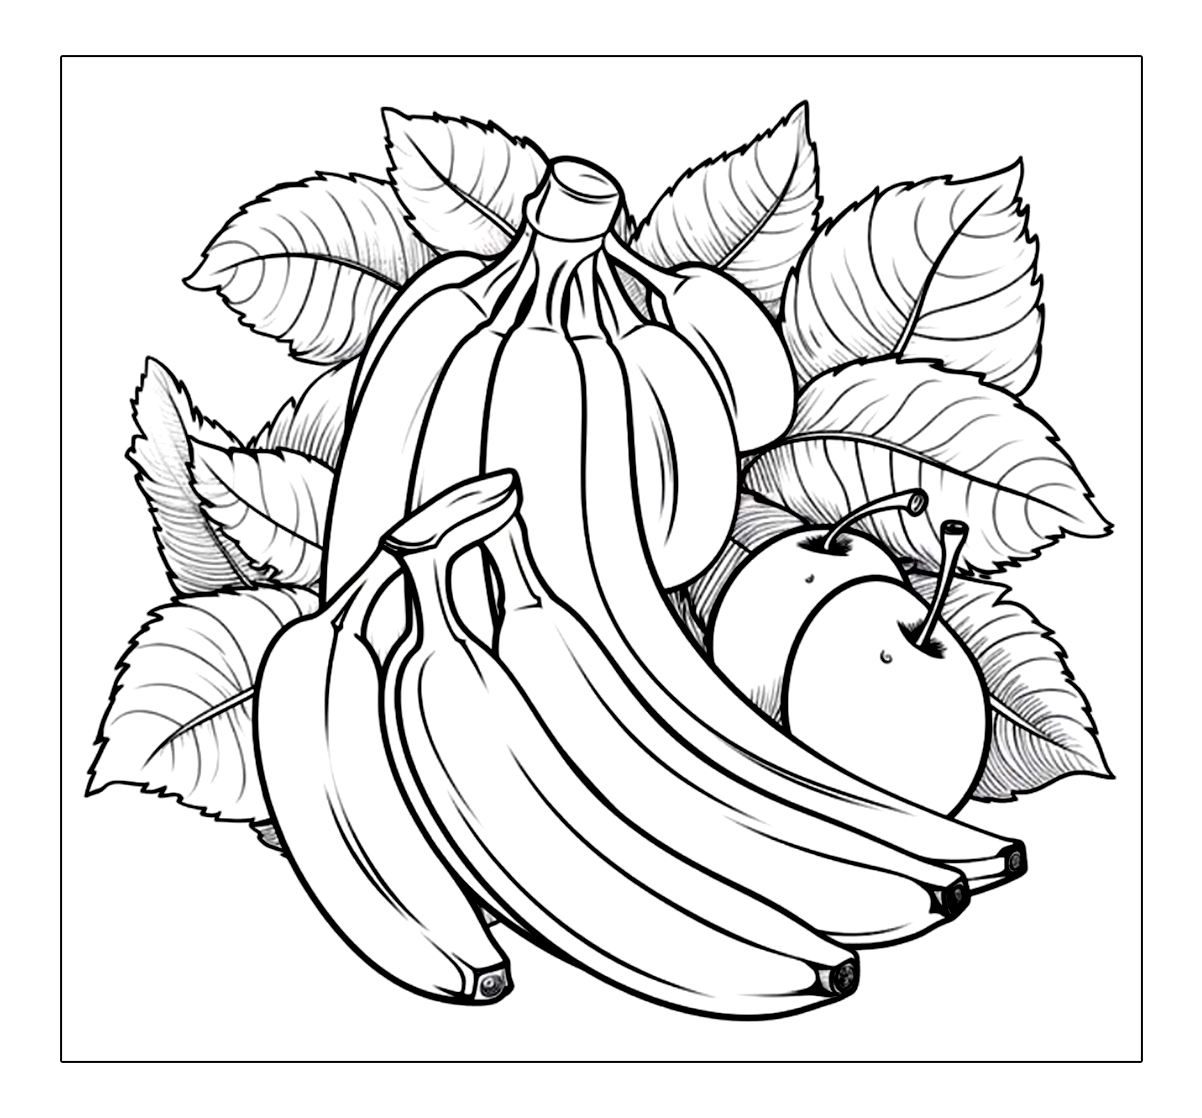 Banane und Obstfreunde sind zusammen